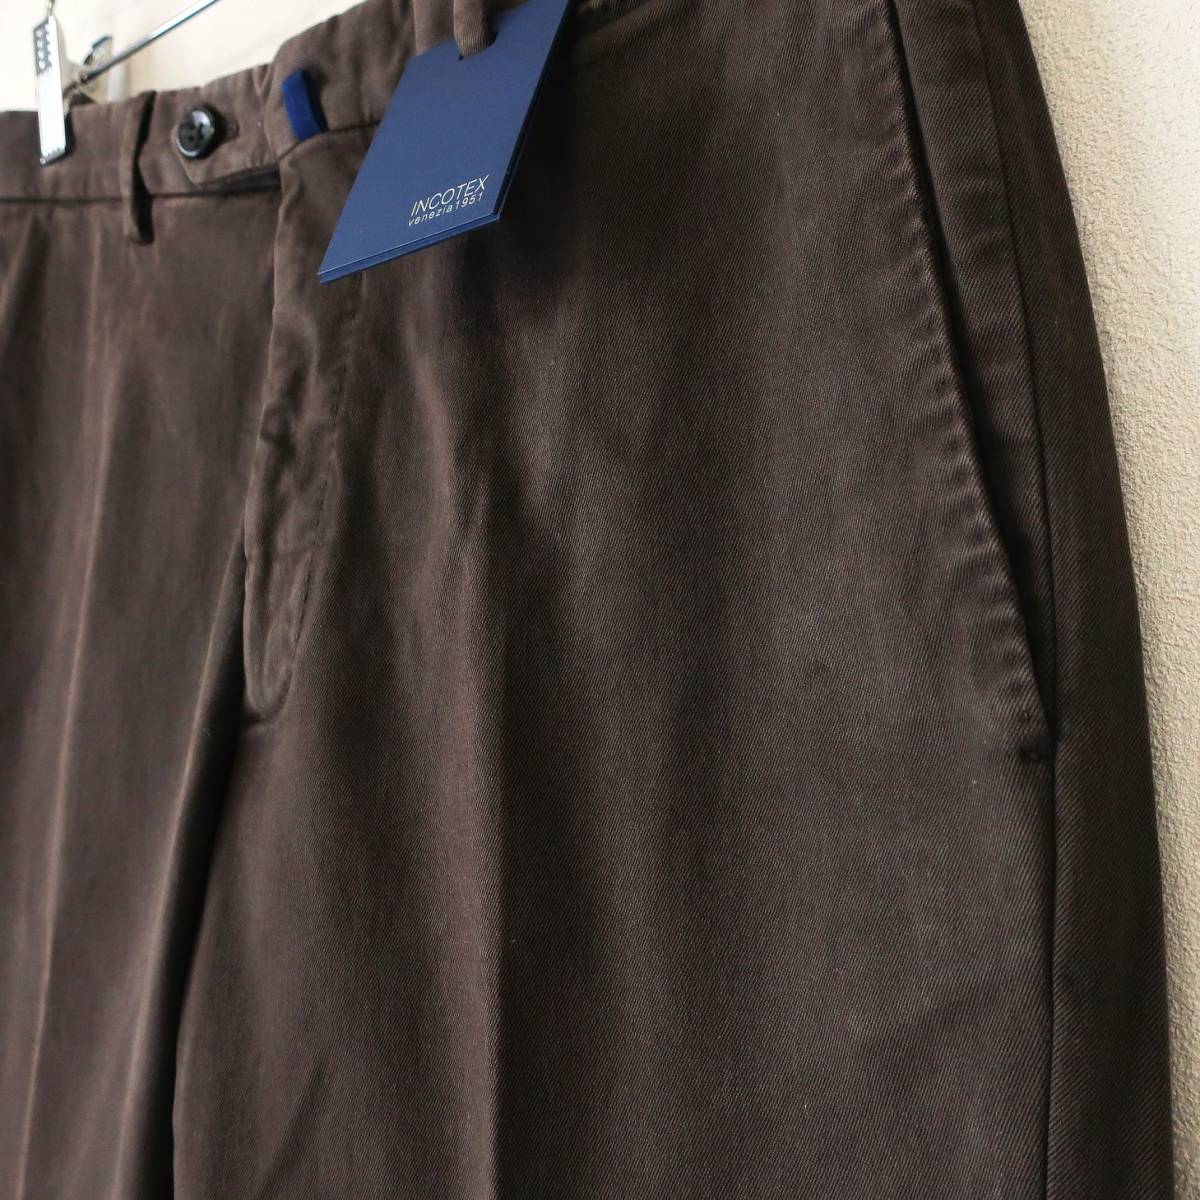  новый товар не использовался INCOTEX INCOTEX стандартный A35 стрейч тонкий брюки из твила слаксы брюки насыщенный коричневый темно-коричневый мужской 46 M размер 